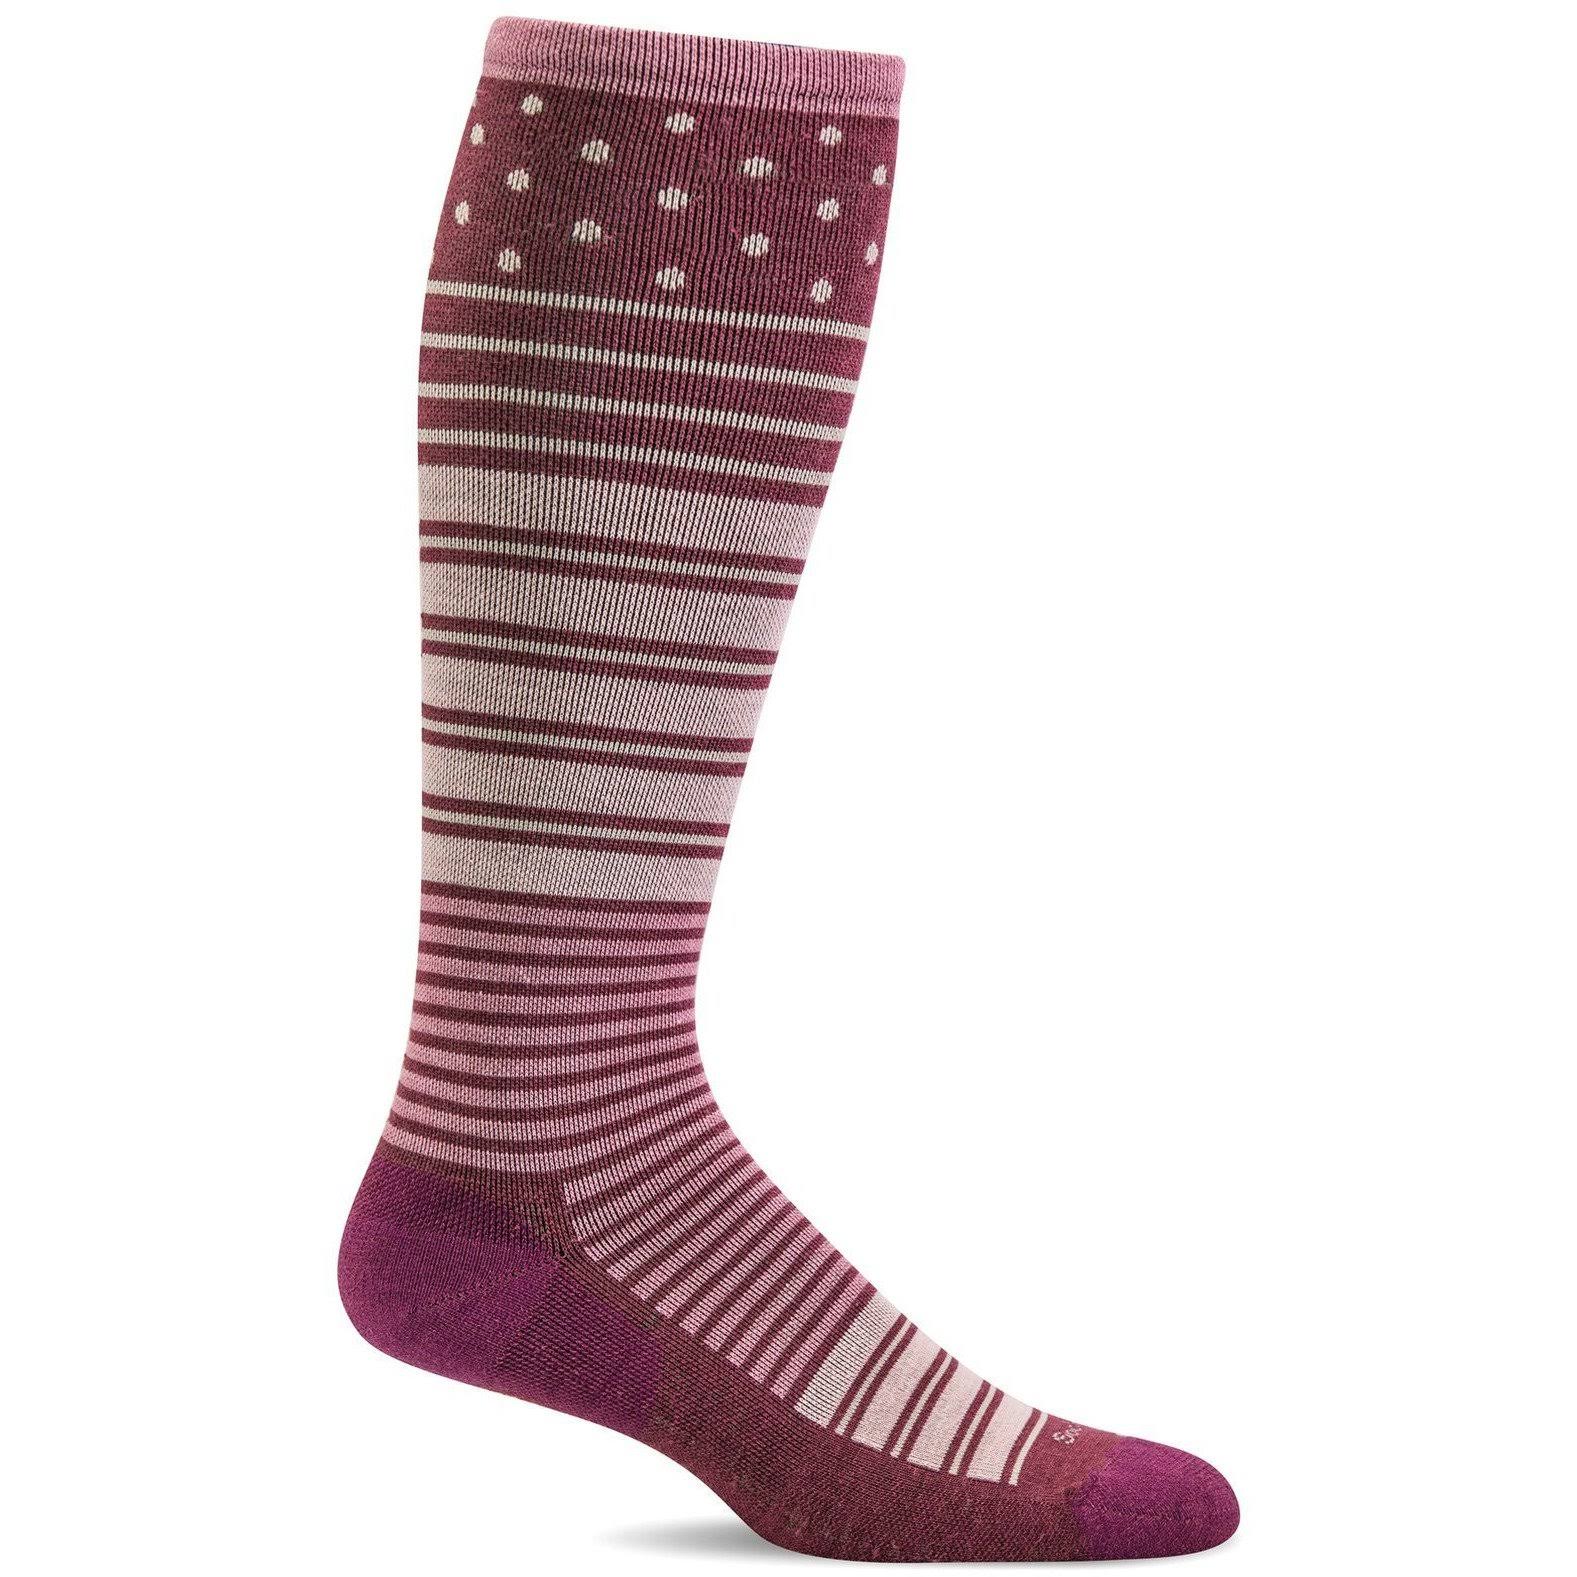 Sockwell Women's Twister Socks 20-30 mmHg